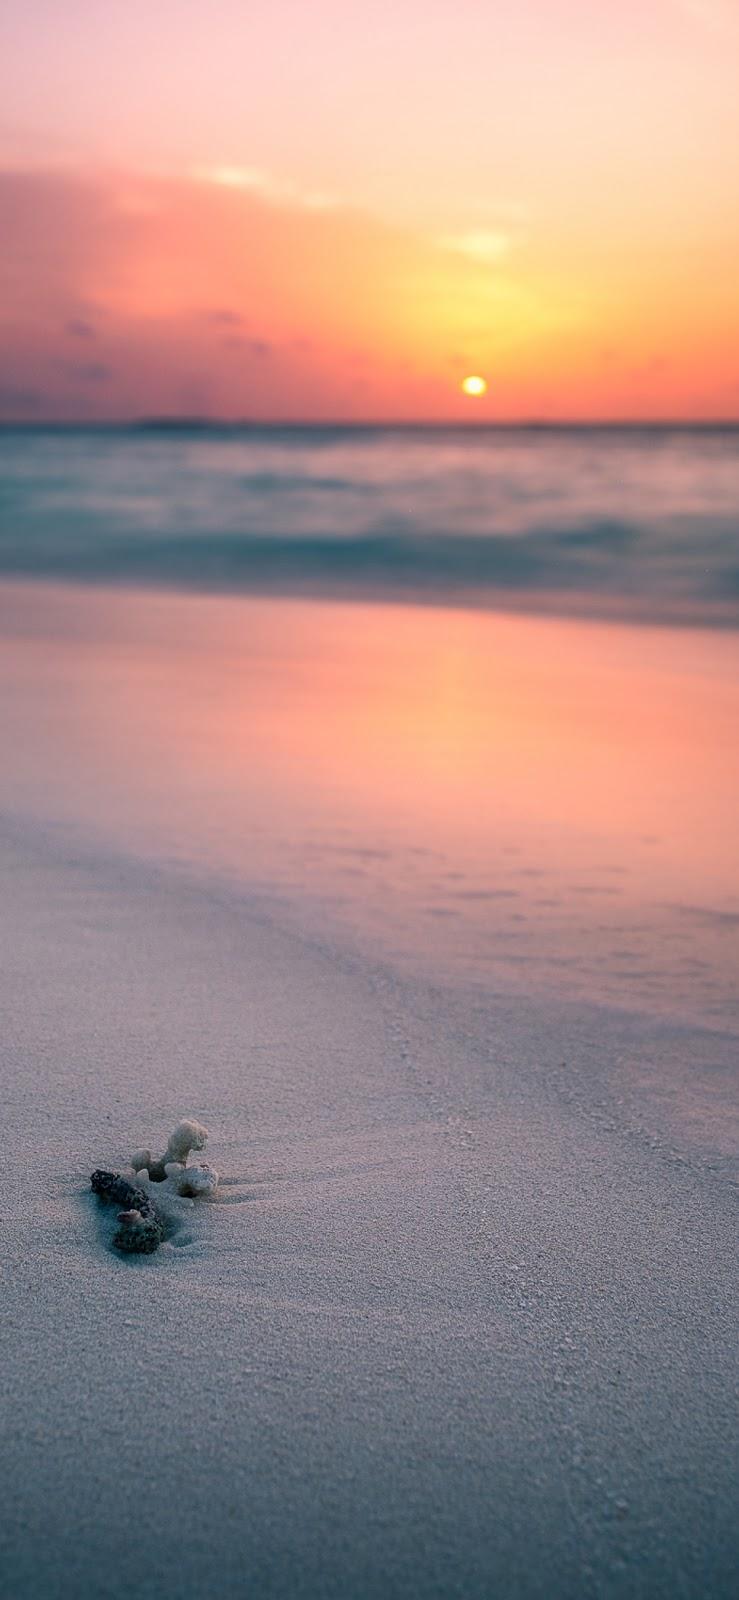 Sunset on the beach (iPhone X) « BEST WALLPAPER VIRAL